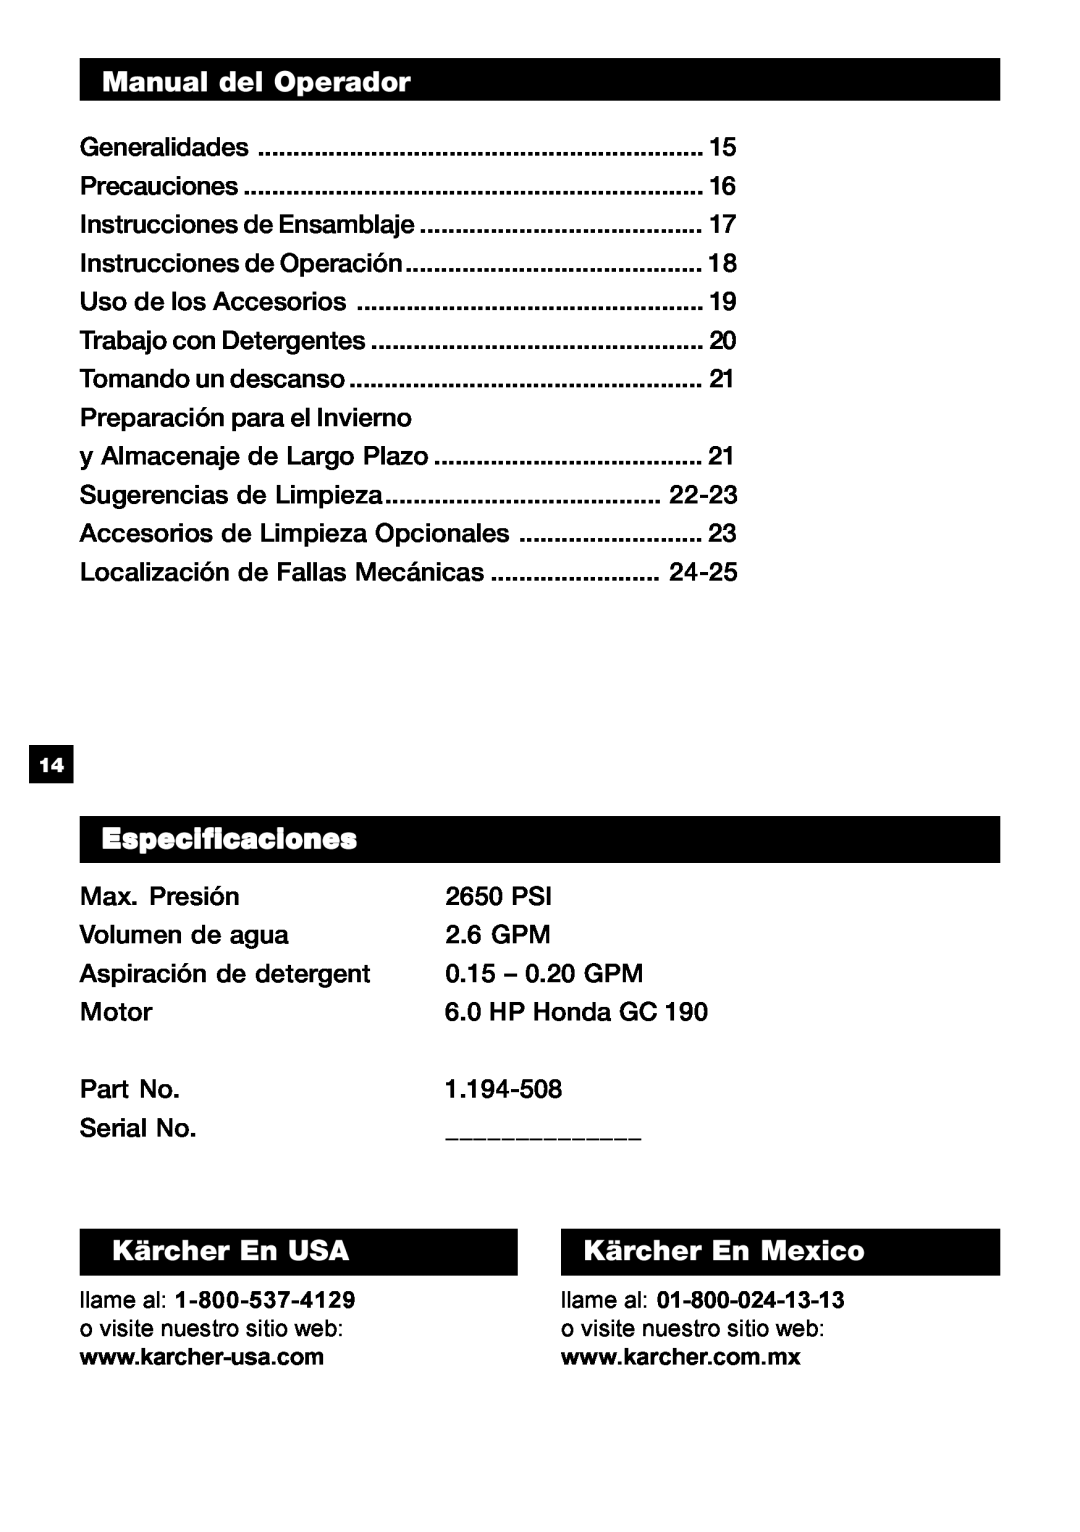 Karcher G 2650 HH manual Manual del Operador, Especificaciones, Kärcher En USA, Kärcher En Mexico 